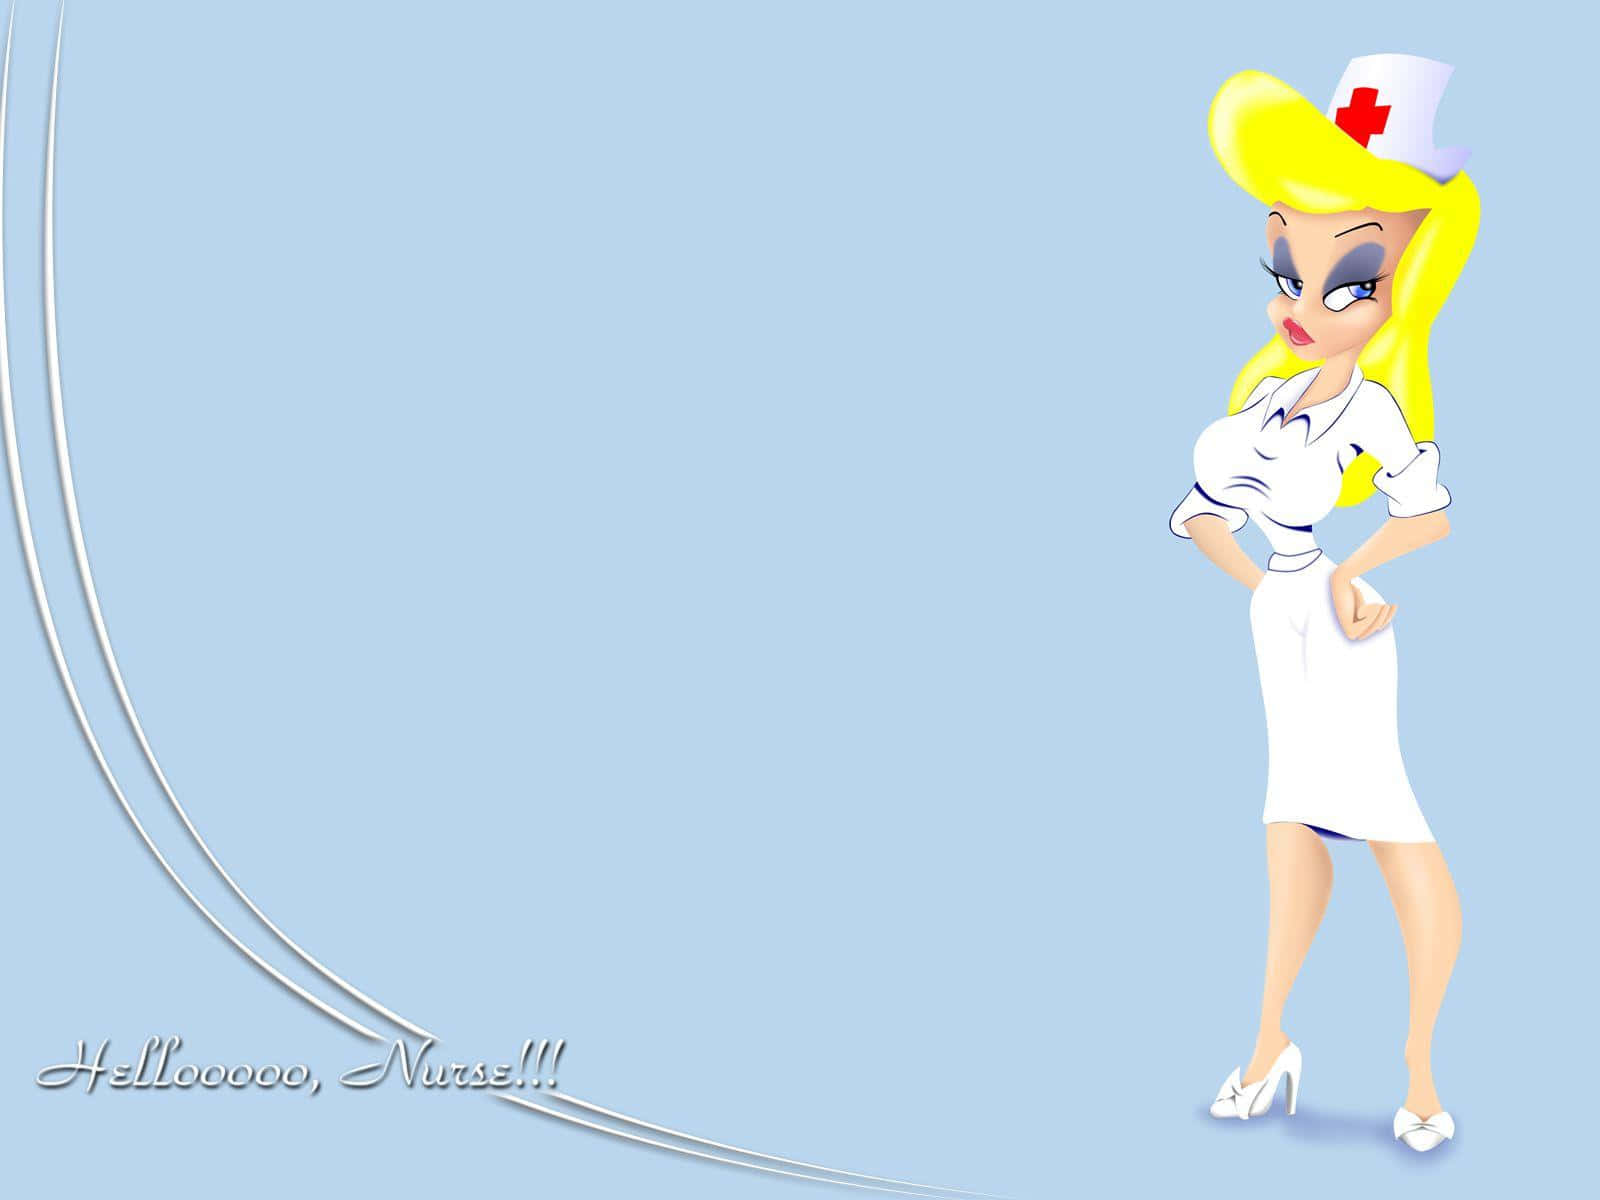 A Cartoon Nurse In A White Dress